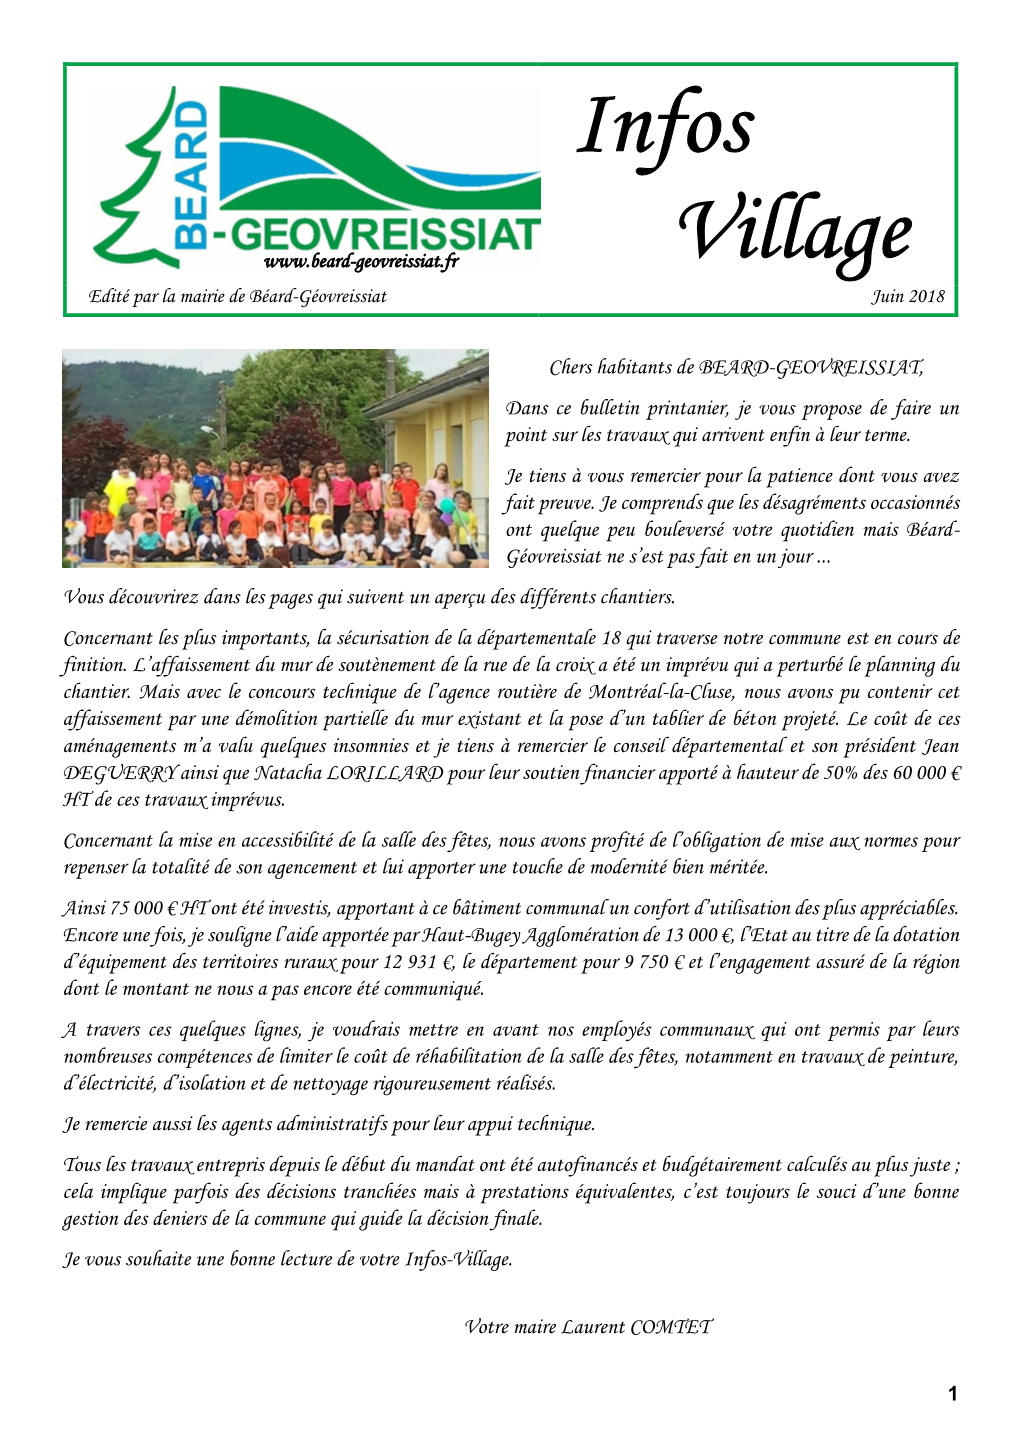 Infos Village